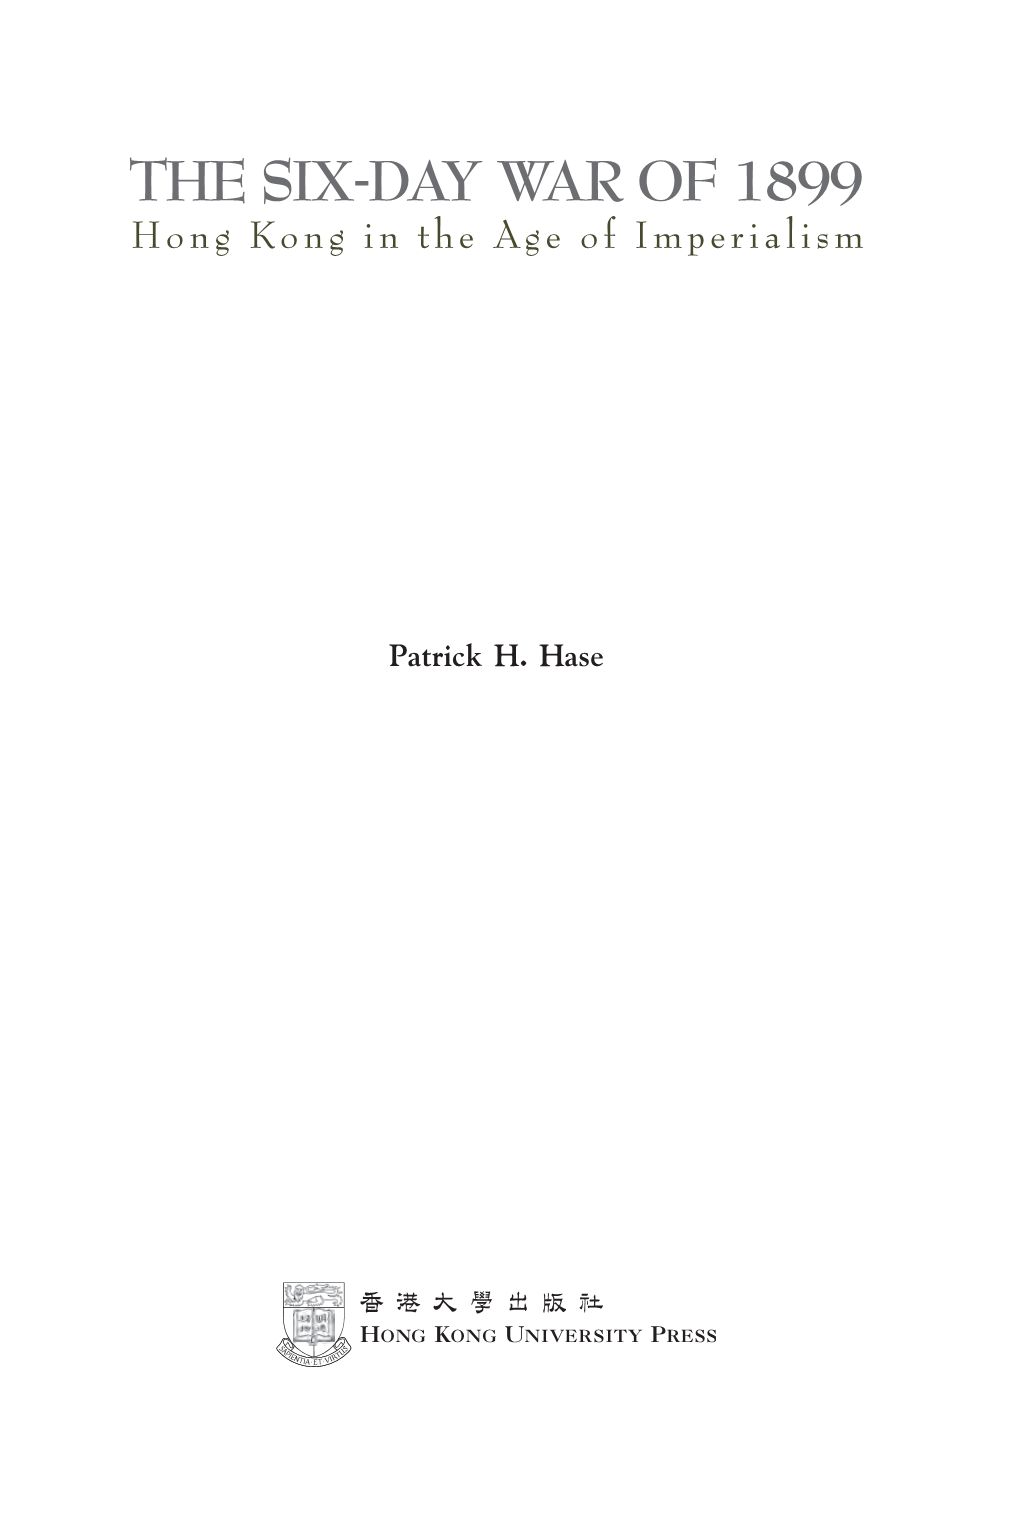 Patrick H. Hase Hong Kong University Press the University of Hong Kong Pokfulam Road Hong Kong